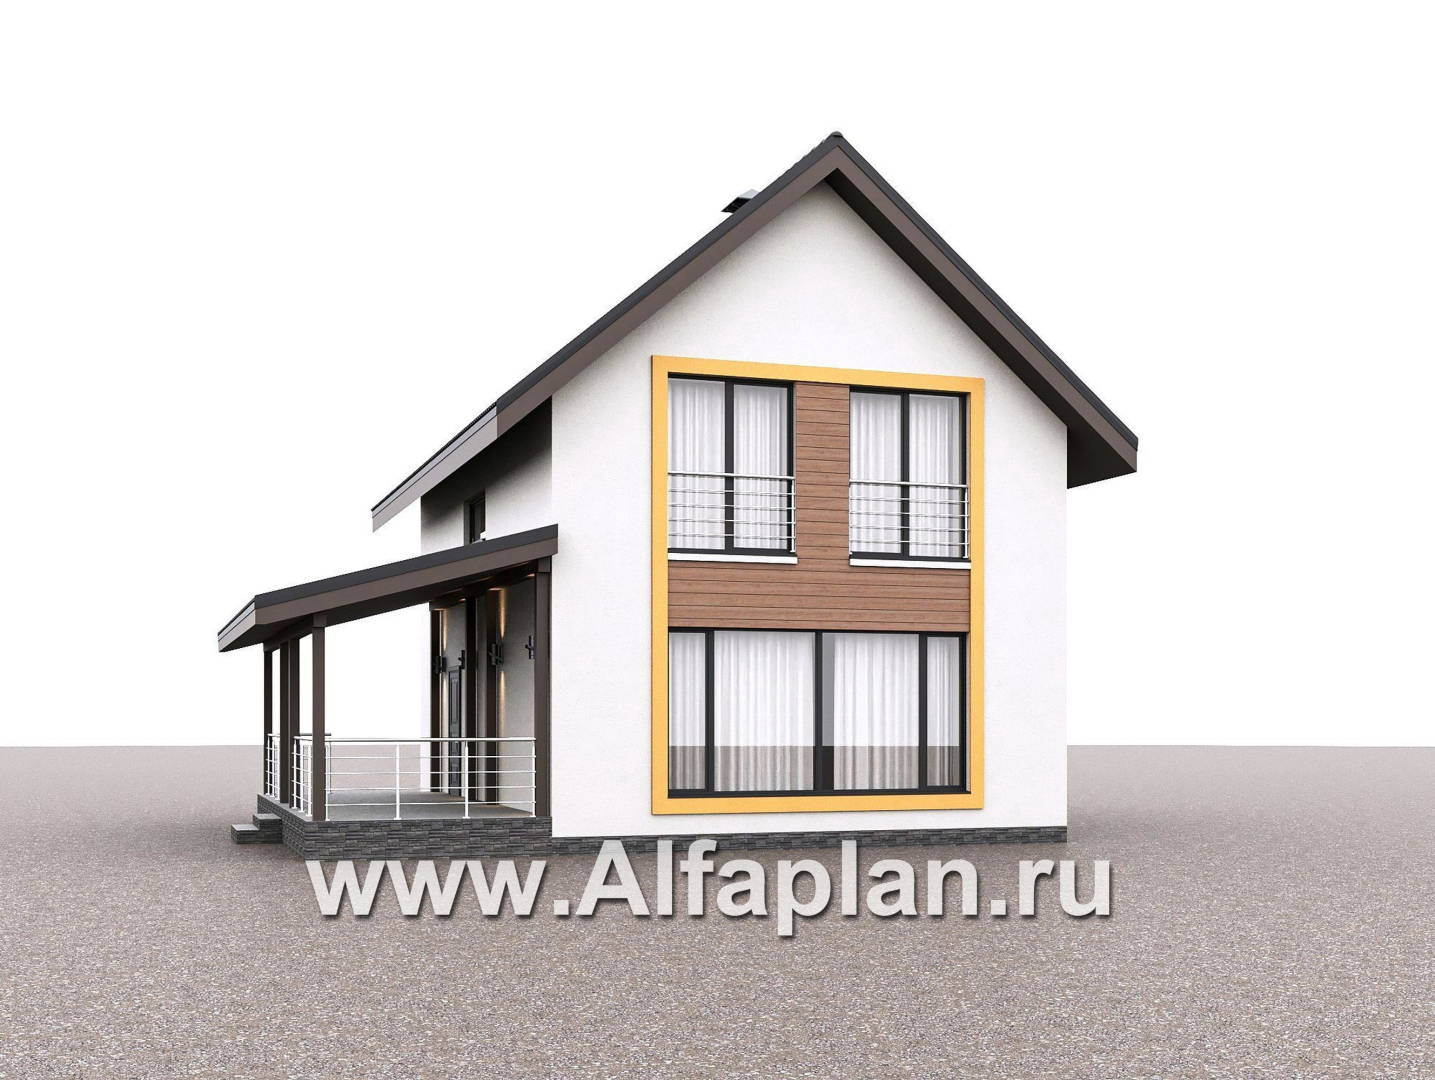 Проекты домов Альфаплан - "Викинг" - проект дома, 2 этажа, с сауной и с террасой сбоку, в скандинавском стиле - дополнительное изображение №4